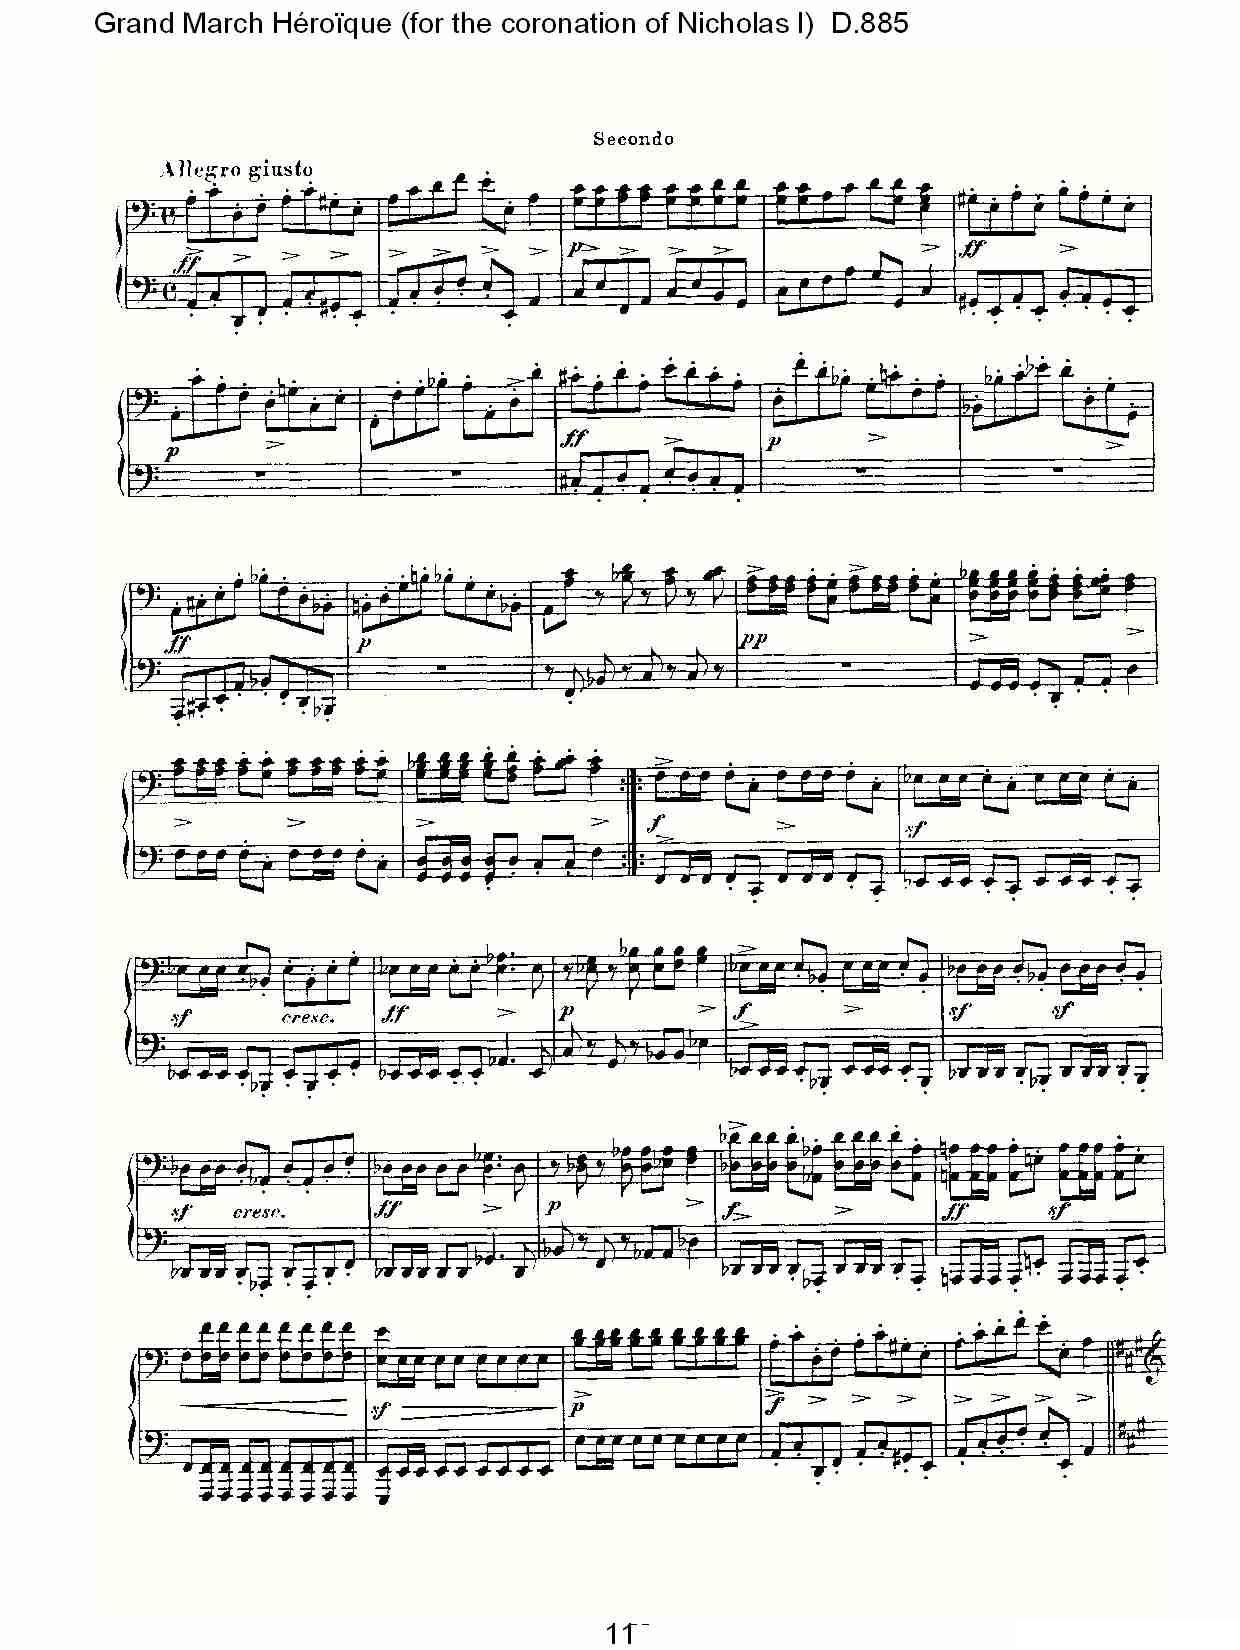 豪华进行曲（为尼古拉斯一世加冕礼而作)D.88）钢琴曲谱（图11）